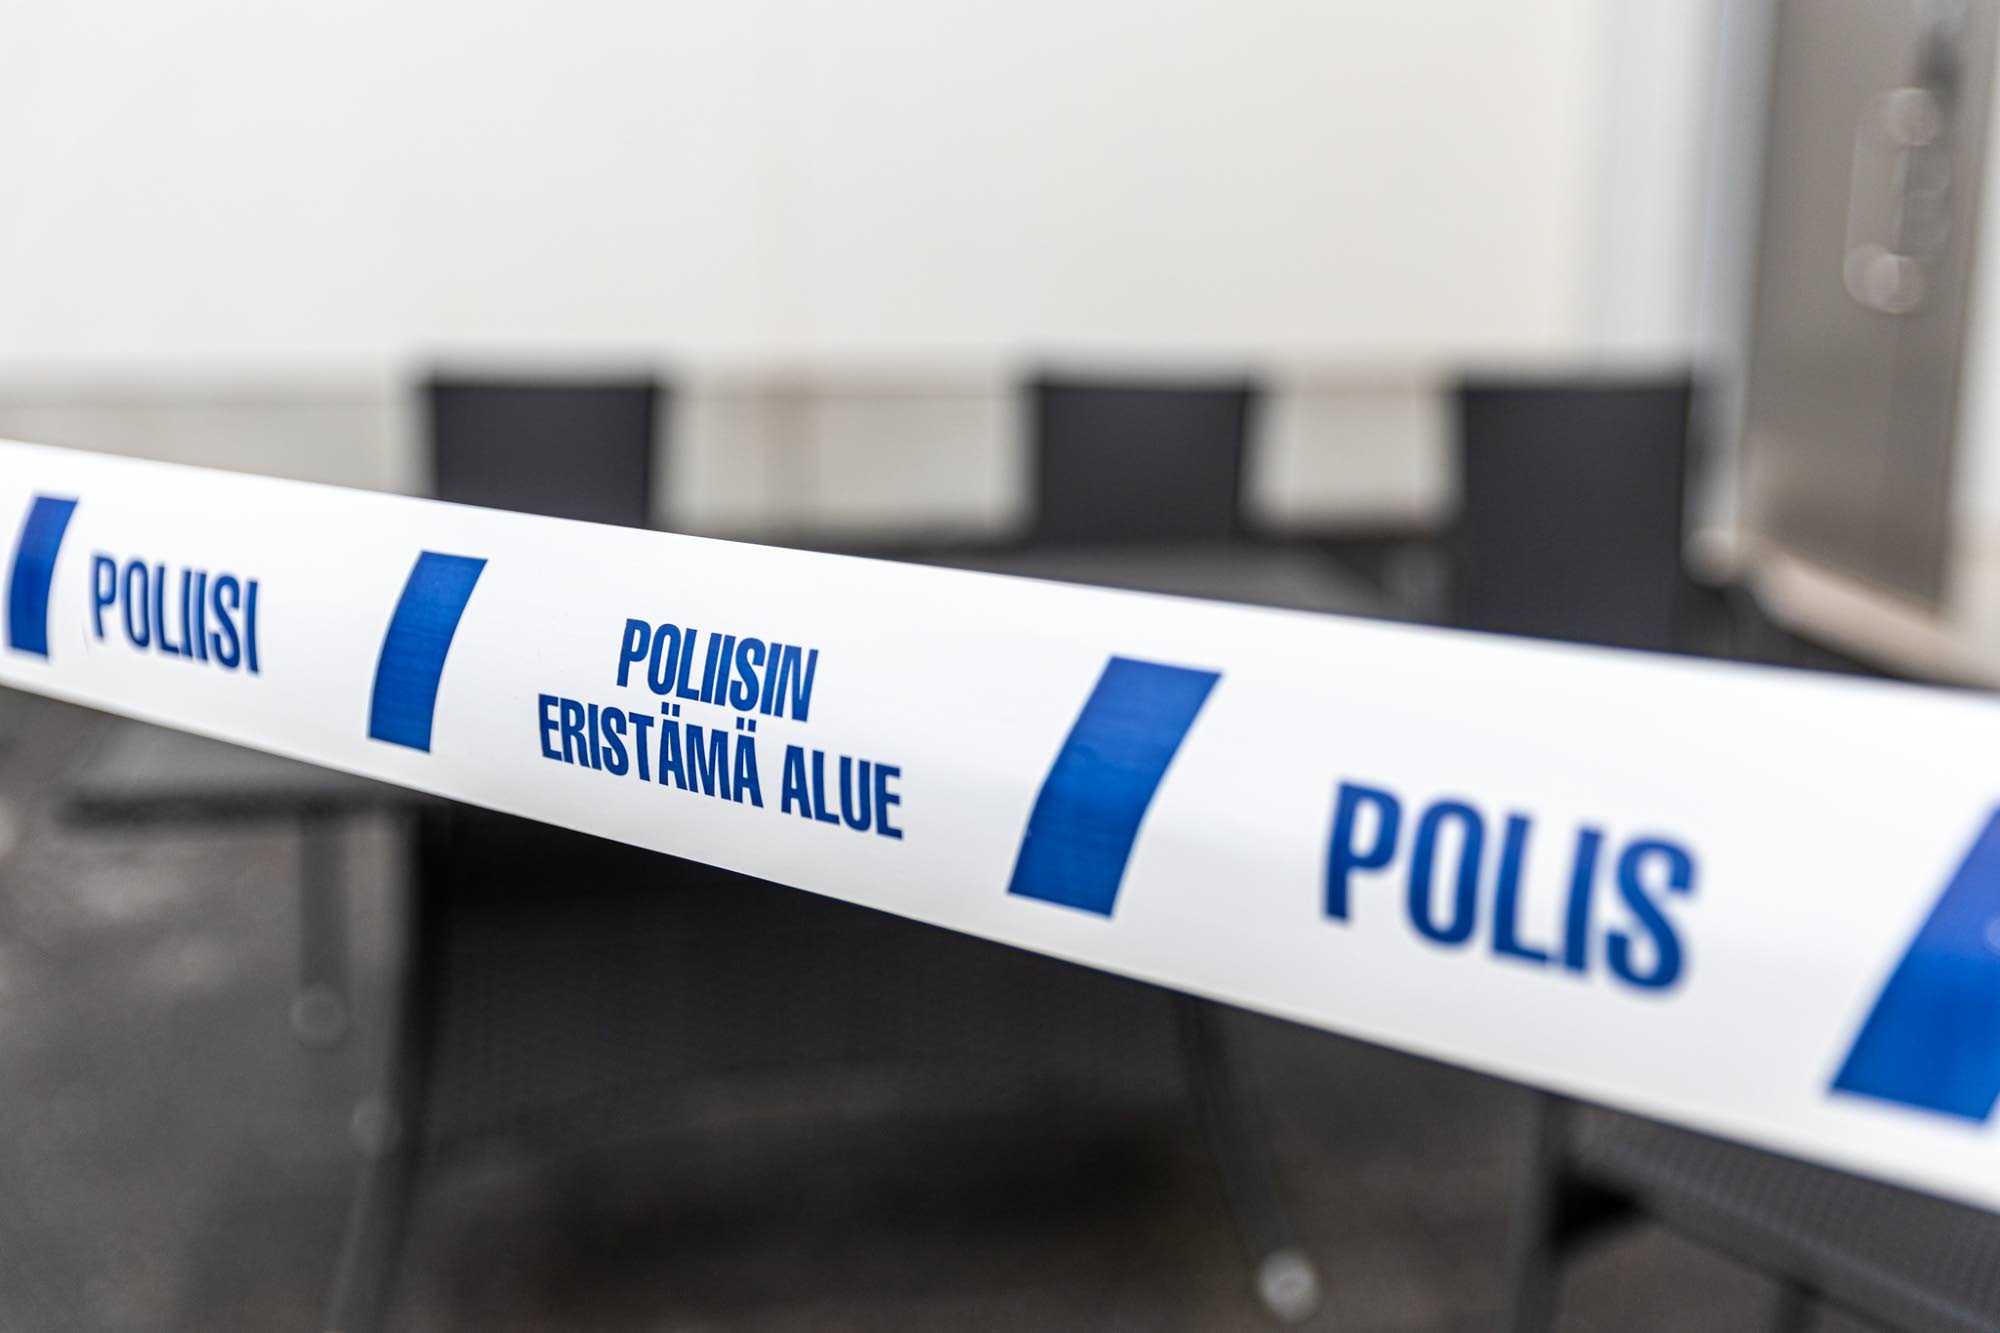 Ett blått och vitt band med orden Poliisi, Poliisin eristämä alue (Polis avspärrat område) och Polis.